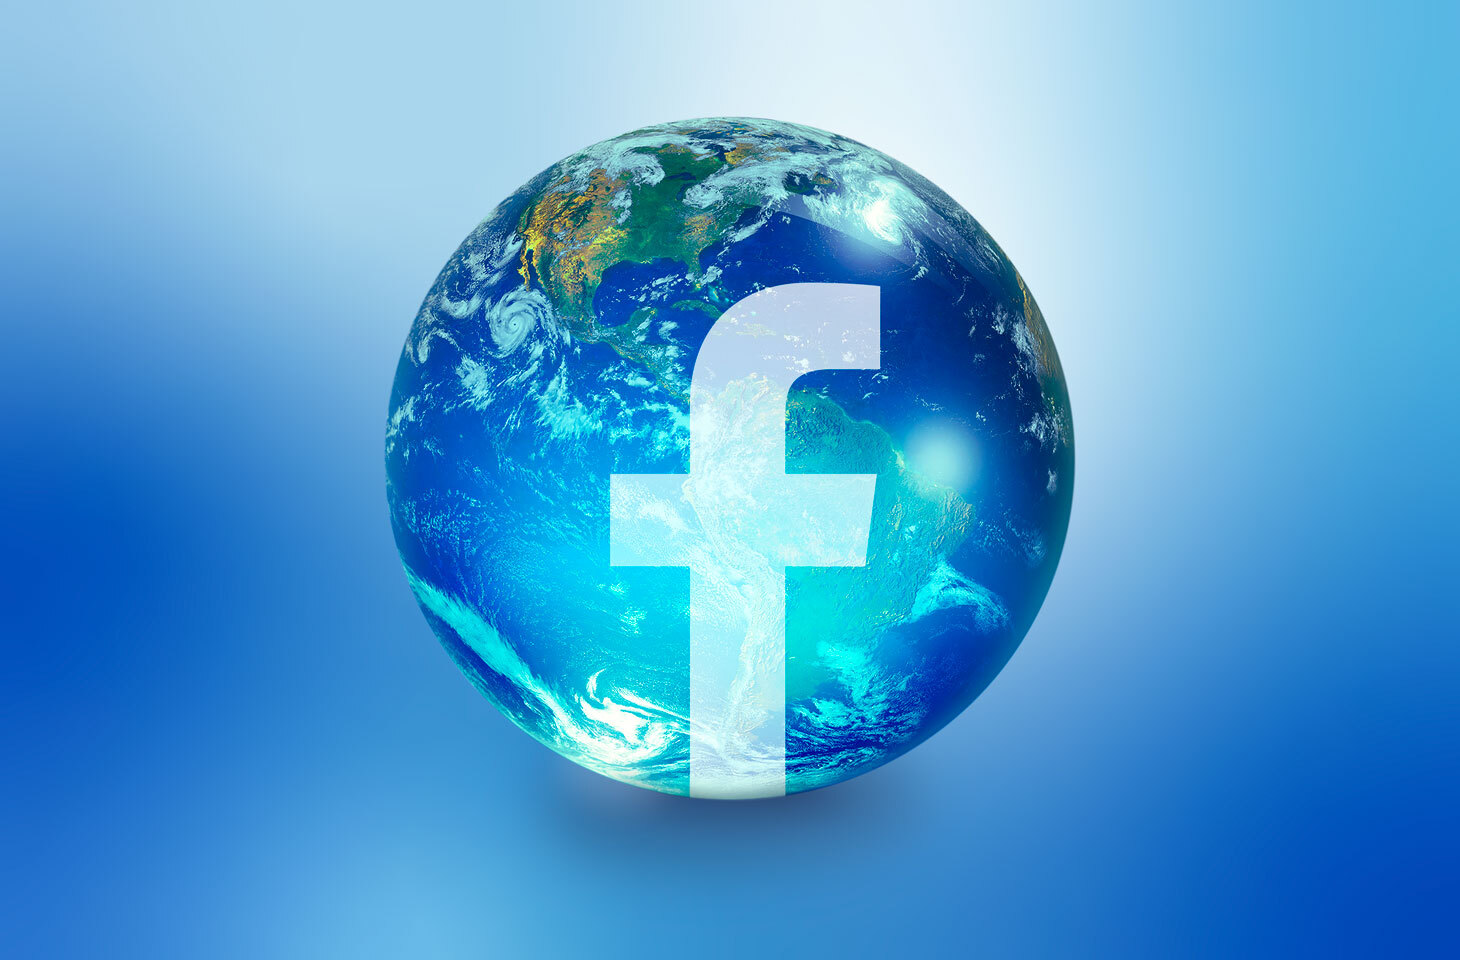 فيس بوك يعفي المشاهير من تطبيق قواعد المحتوى - تقرير